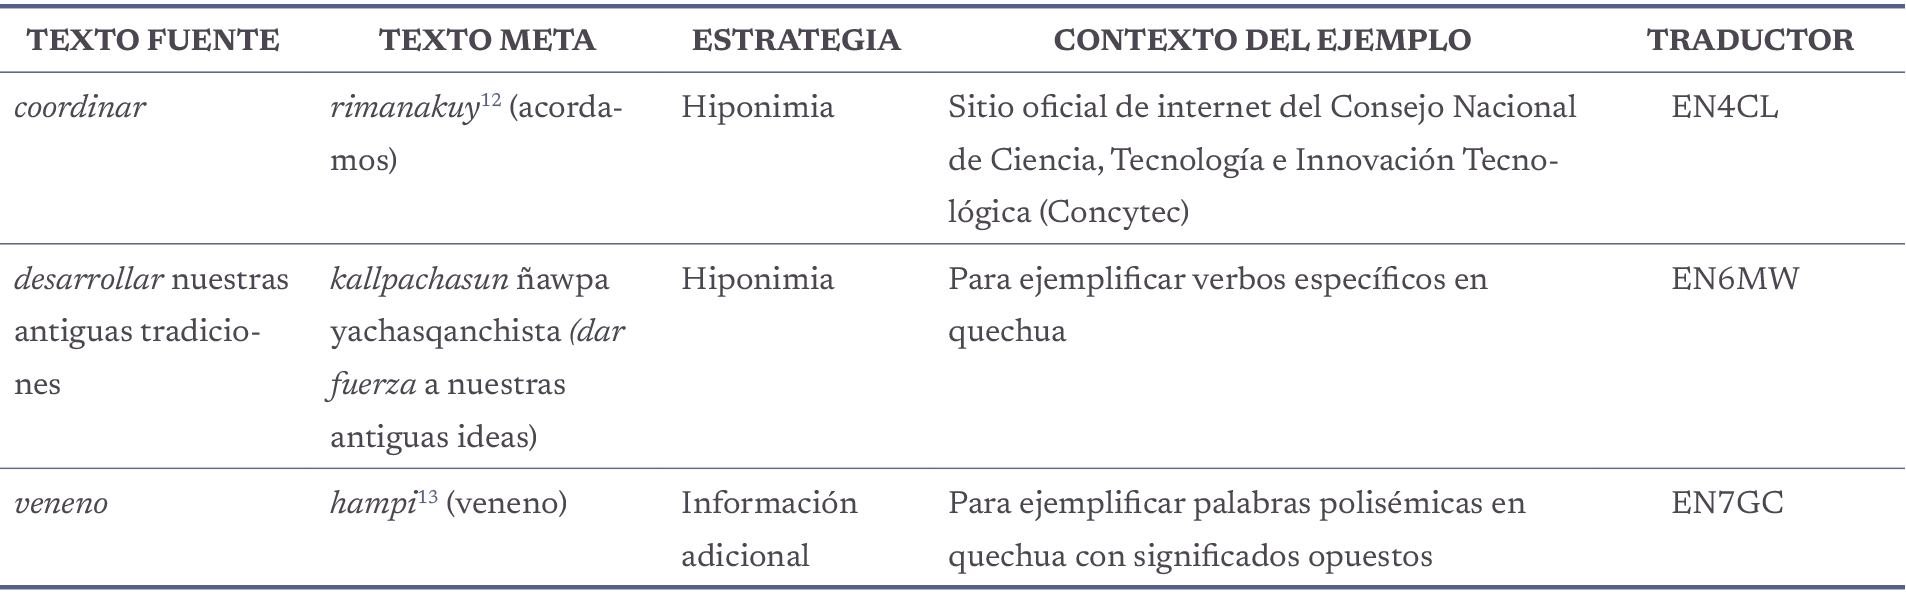 Ejemplos de las estrategias de hiponimia e información adicional.